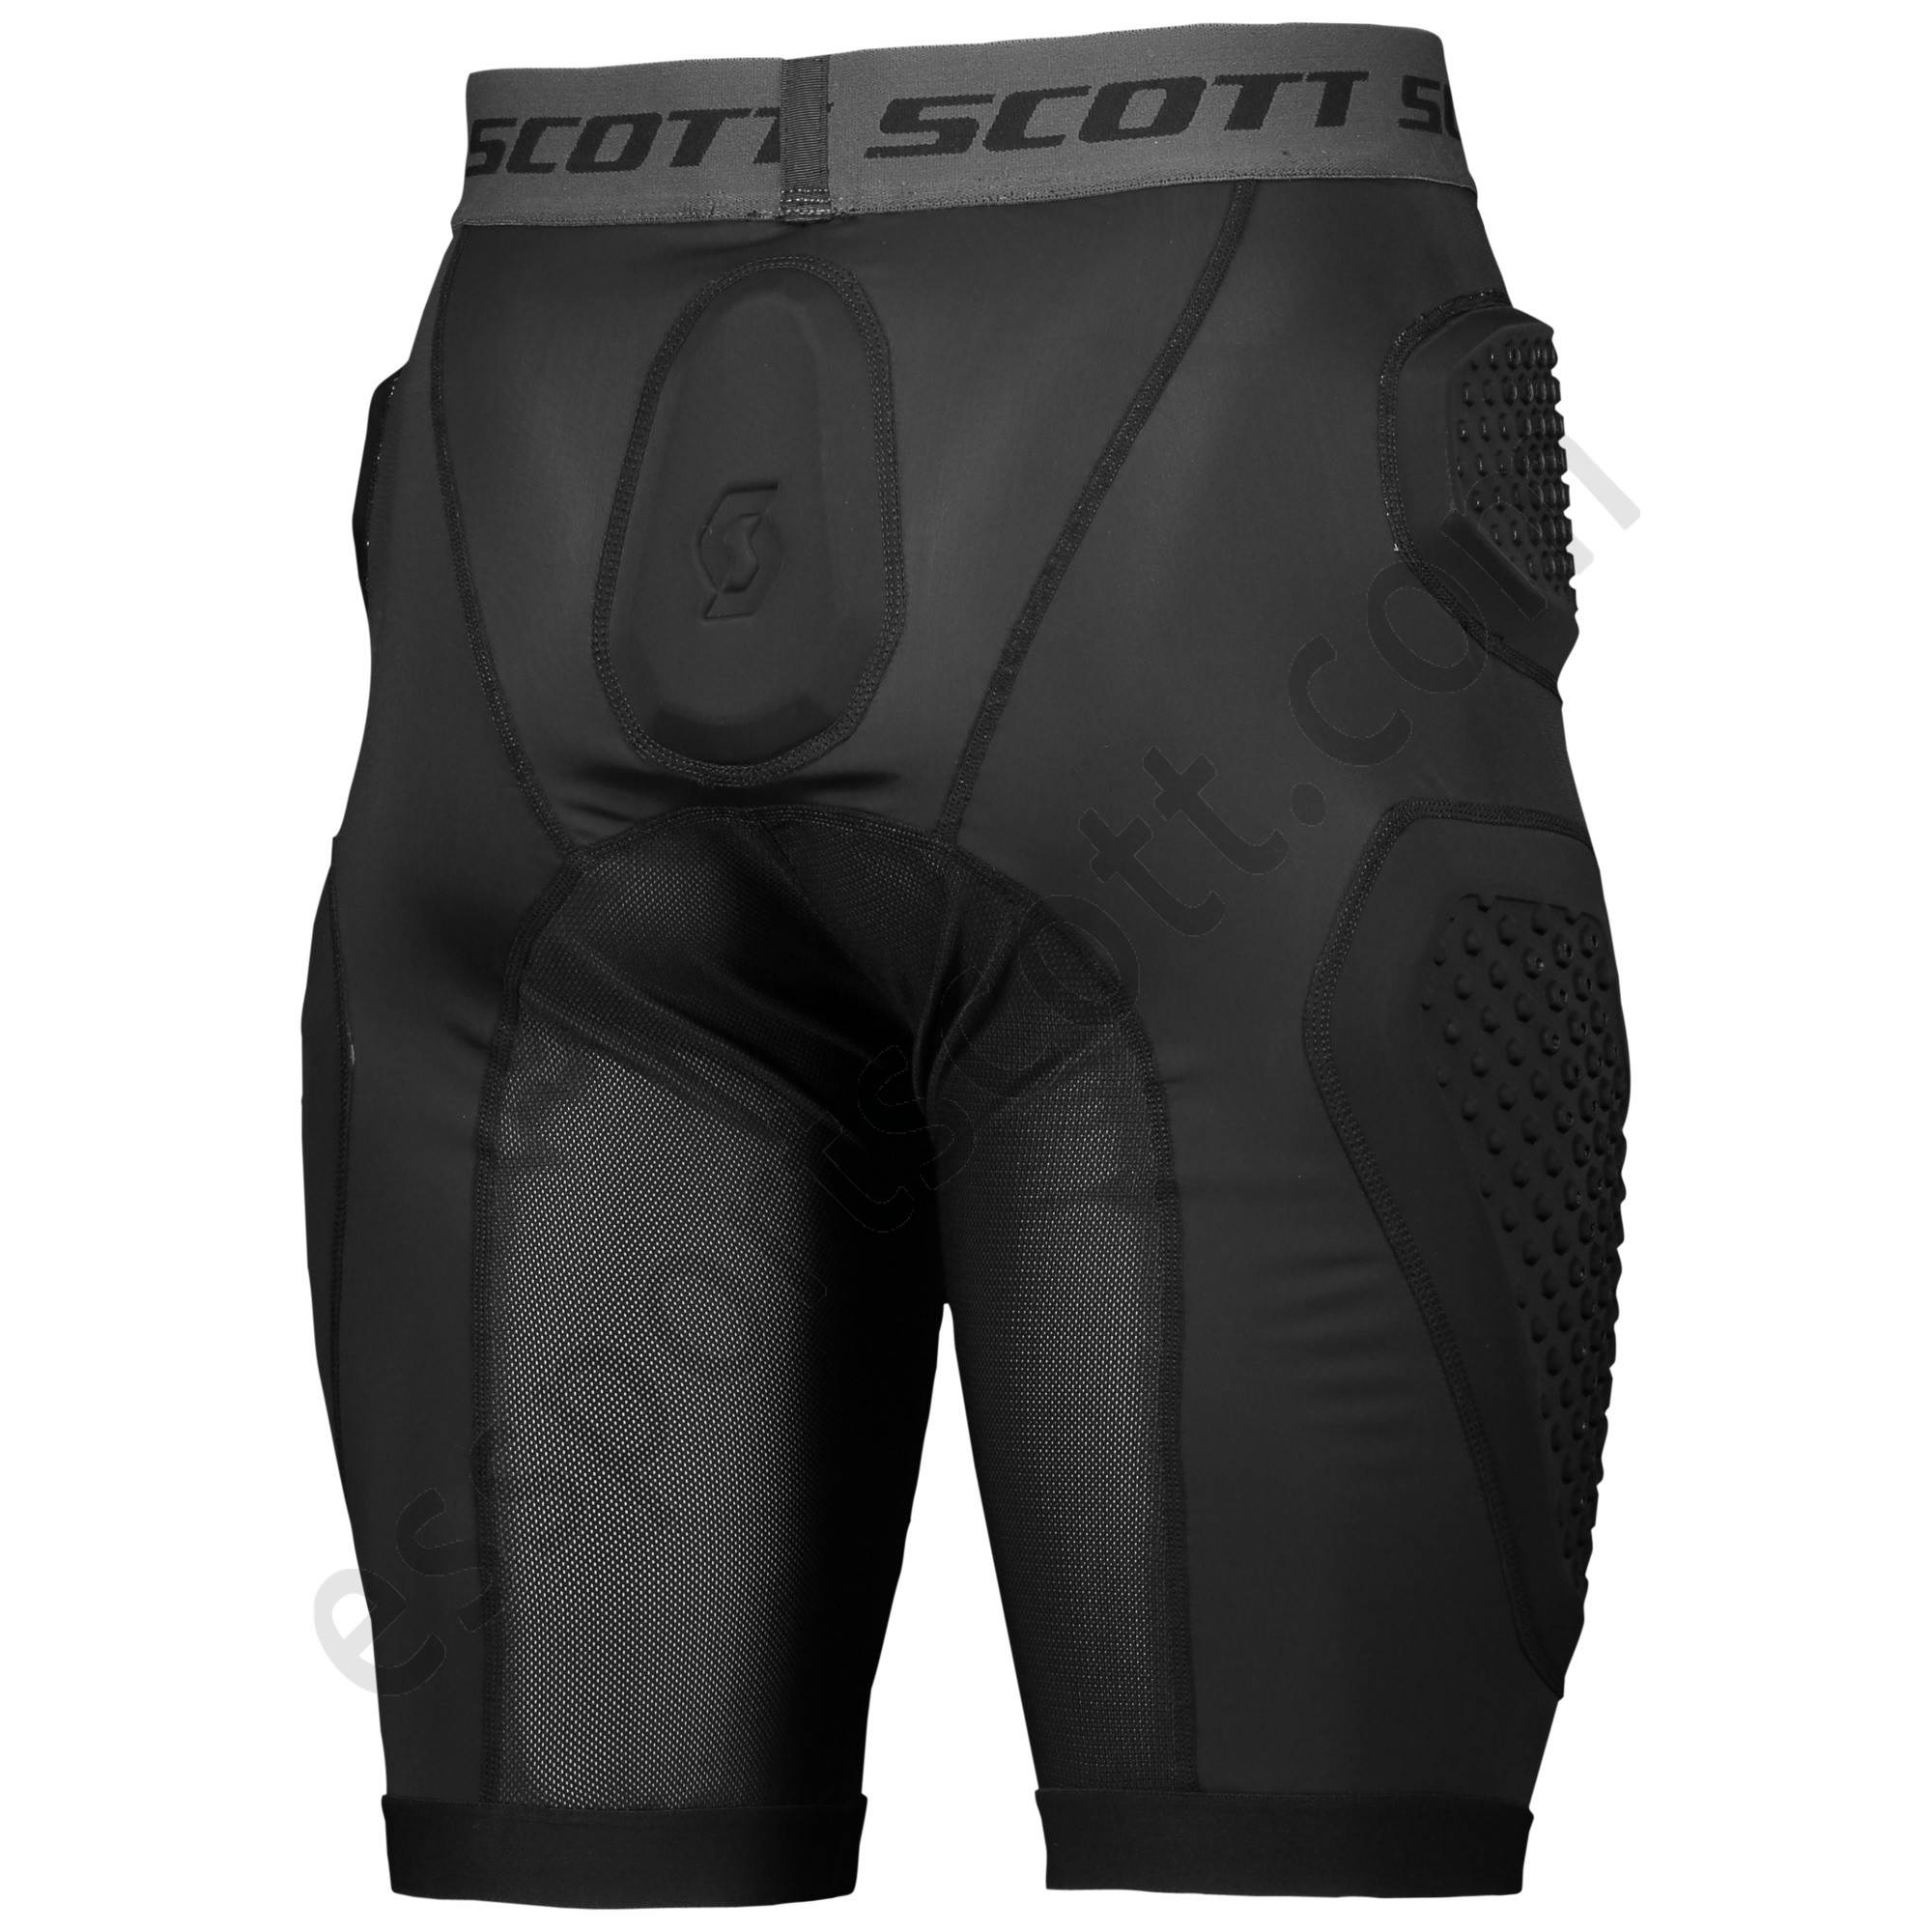 Scott Tienda ◇ Protector para pantalón corto Airflex - Scott Tienda ◇ Protector para pantalón corto Airflex